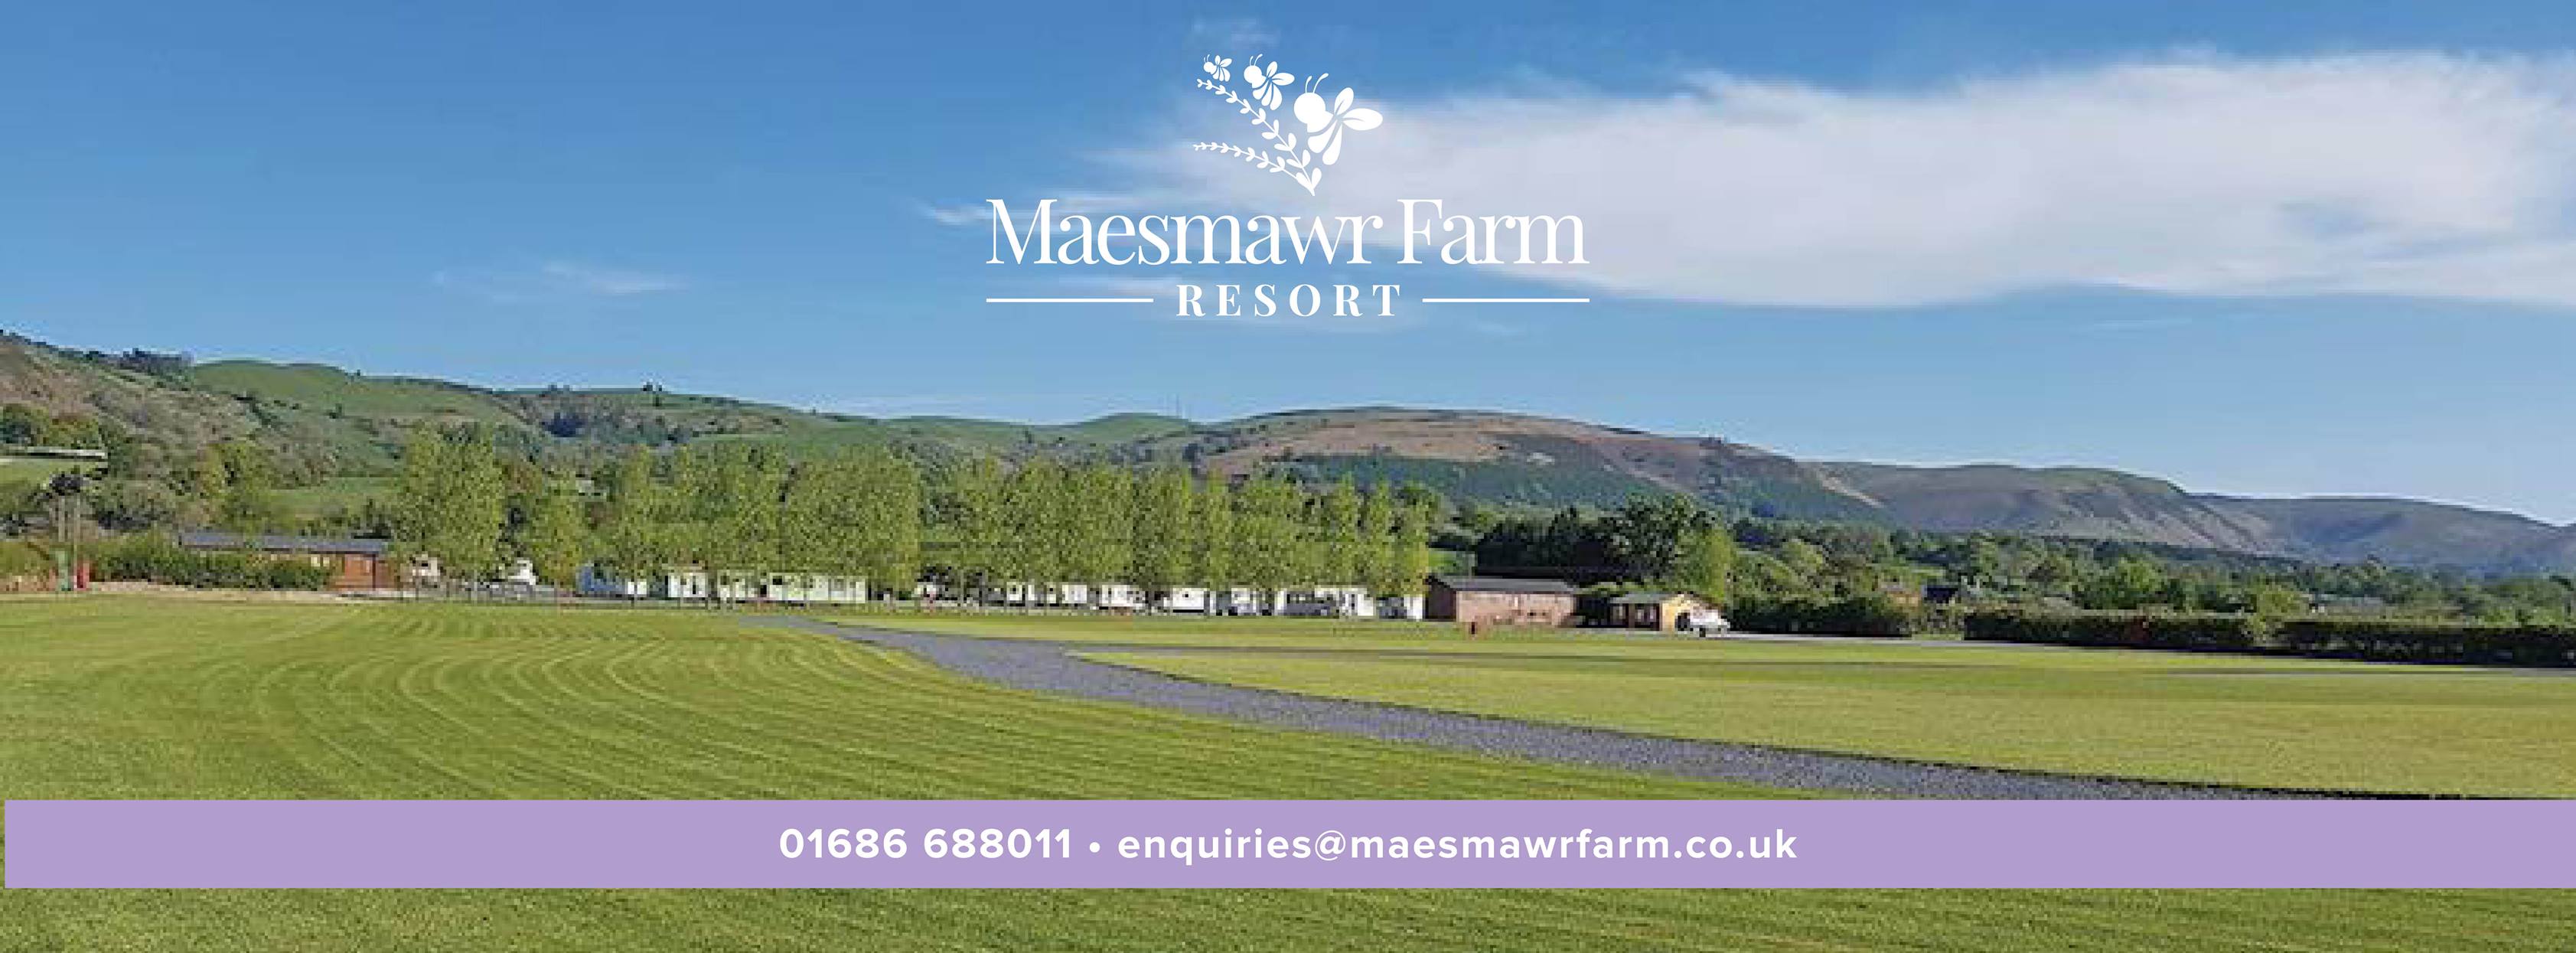 Maesmawr Farm Resort 17427